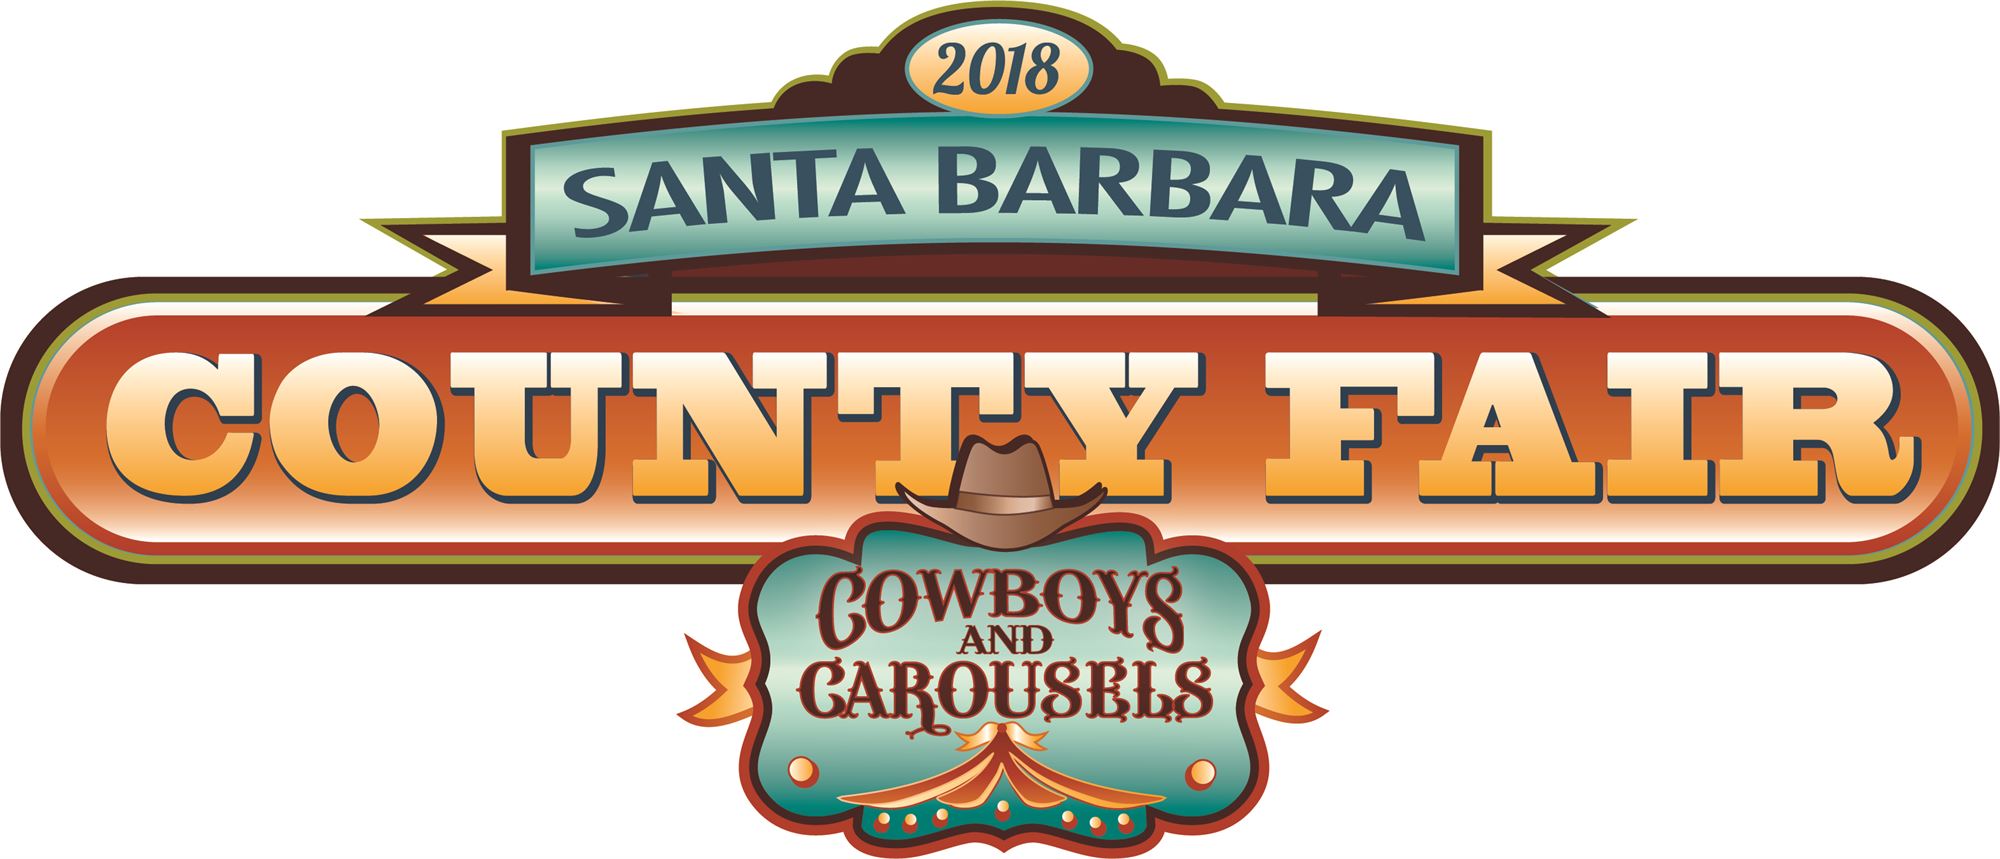 Santa Barbara County Fair ouvre aujourd'hui avec certains des manèges de Neverland Ride0